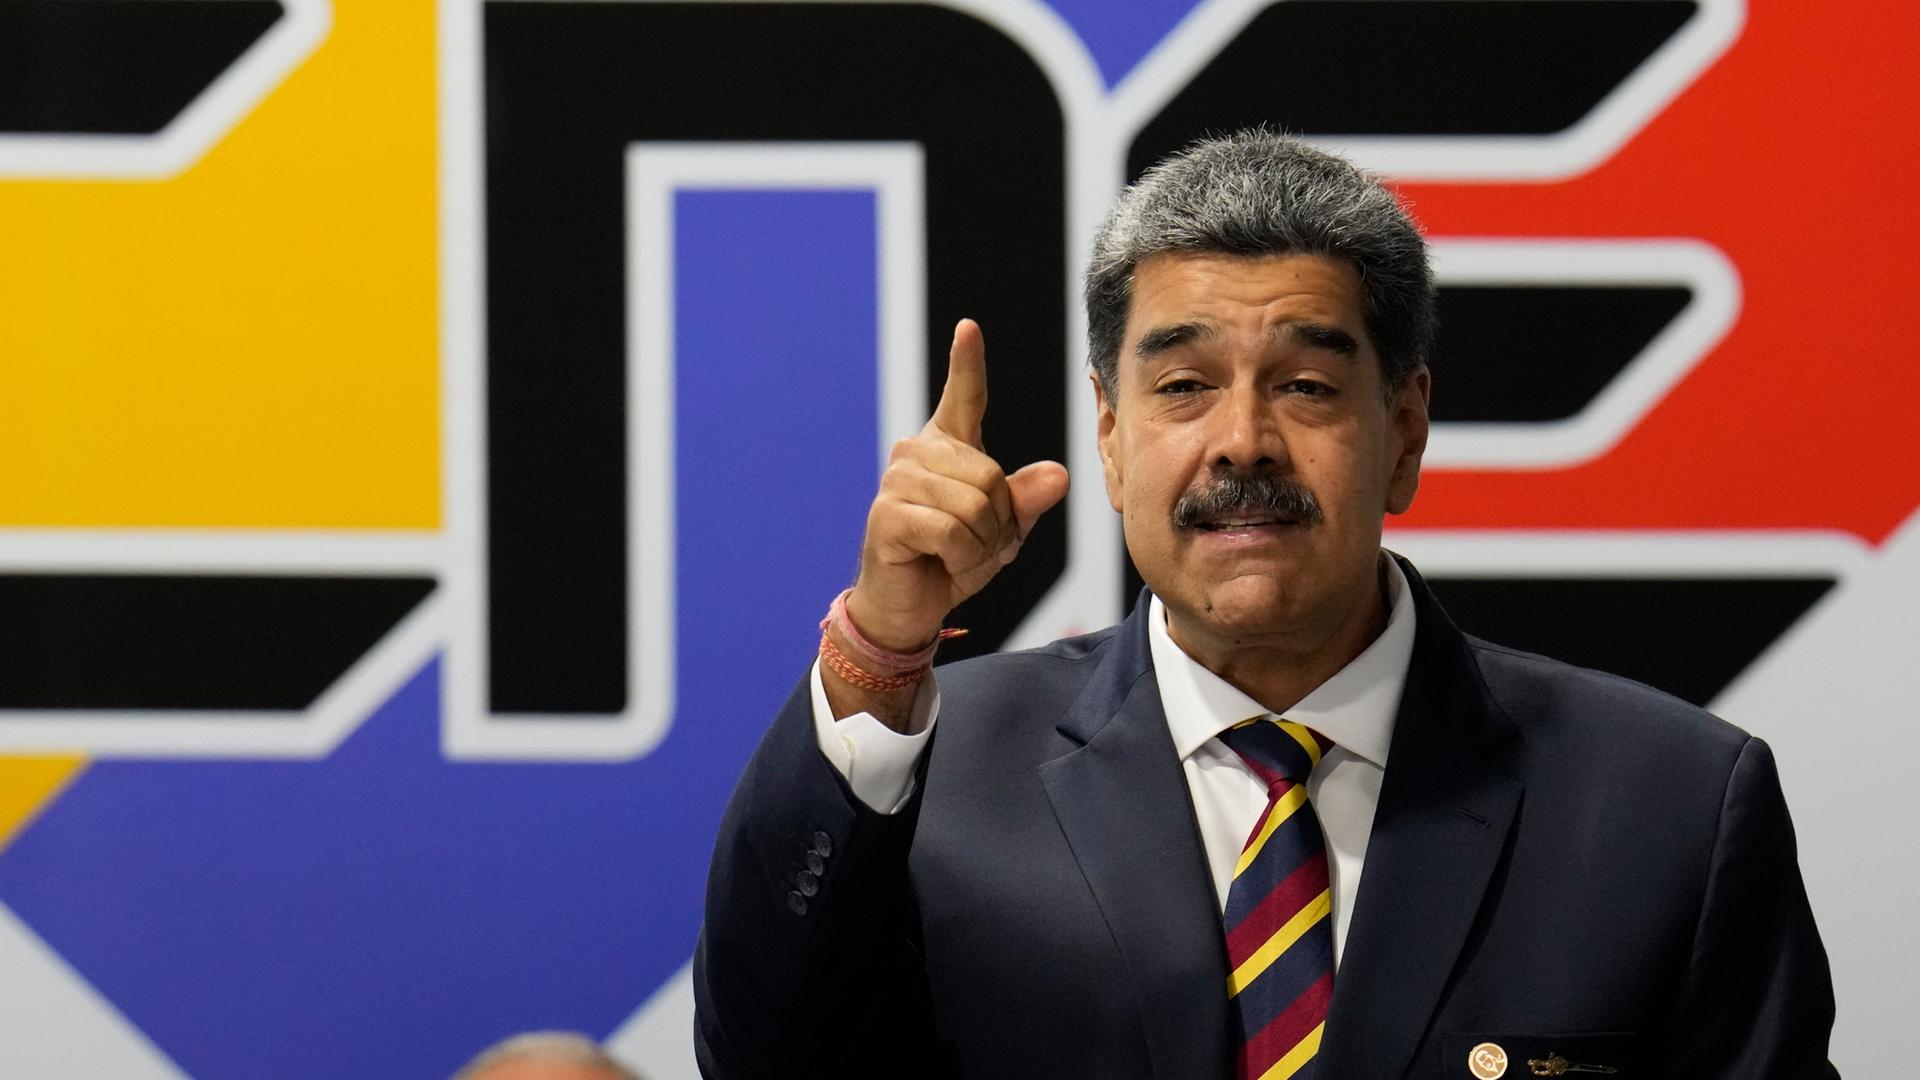 Präsident Nicolas Maduro trägt einen schwarzen Anzug und spricht gestikulierend.